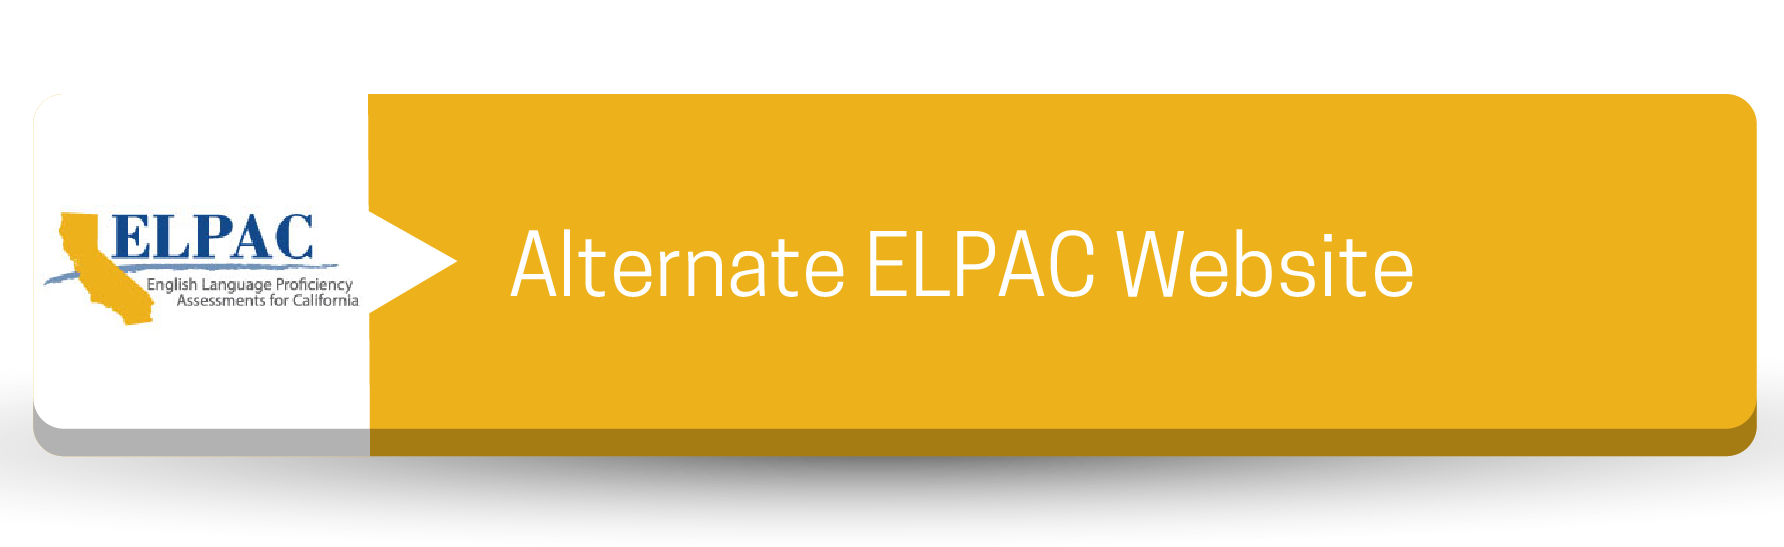 Sitio web alternativo de ELPAC